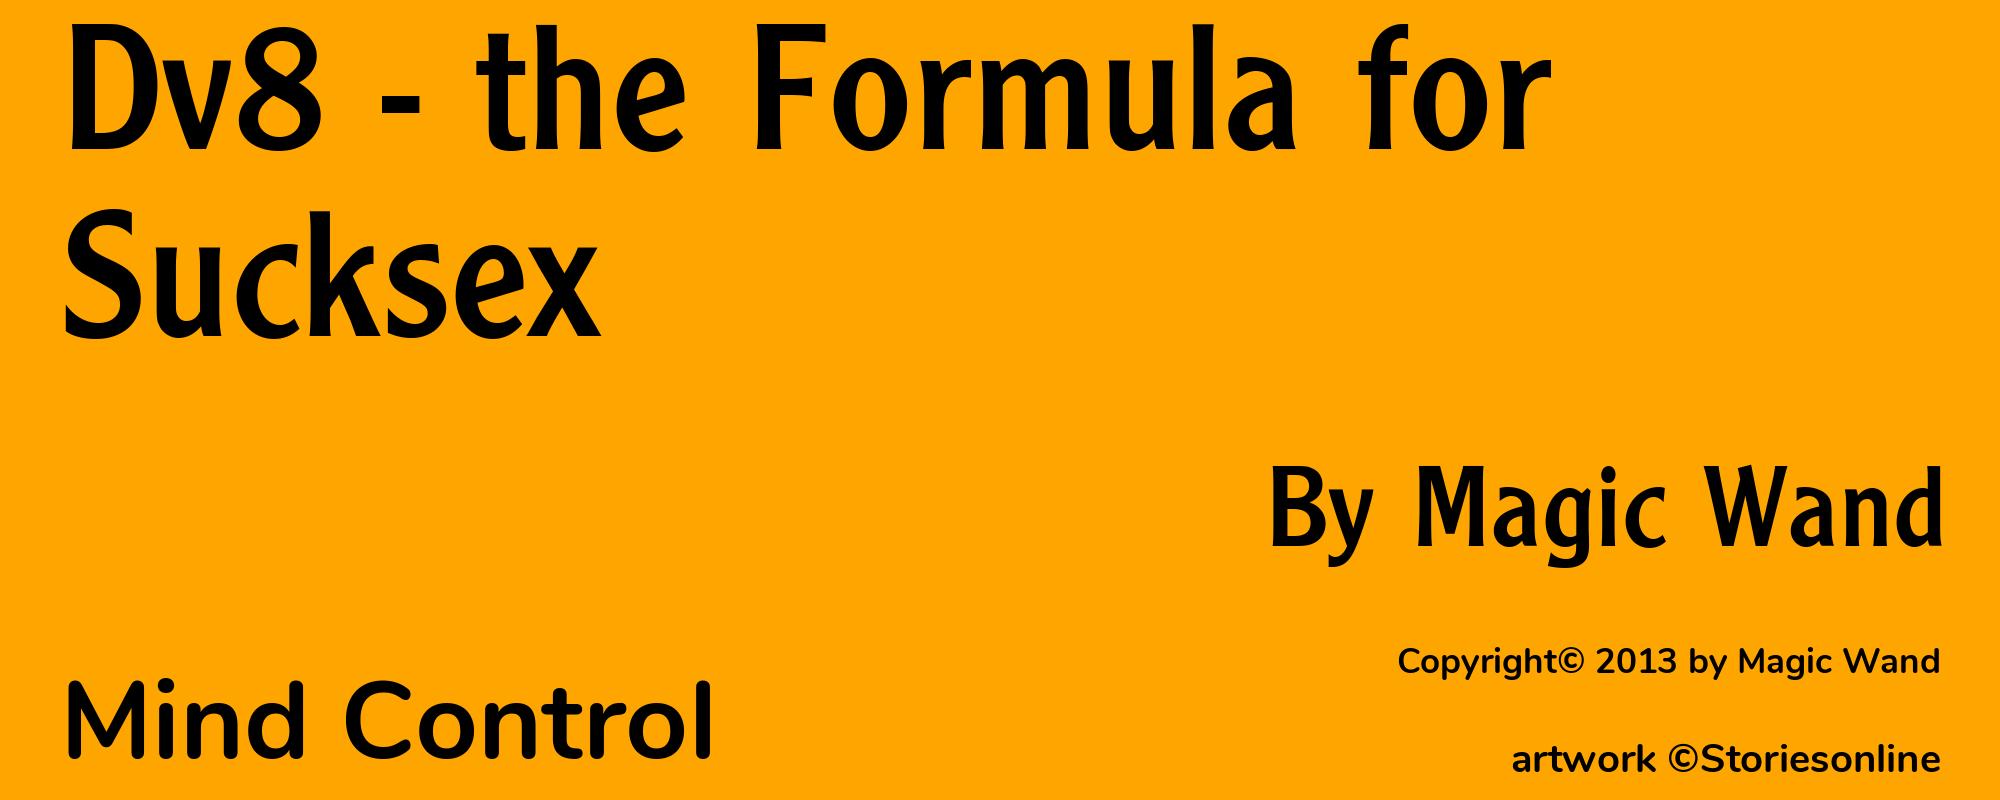 Dv8 - the Formula for Sucksex - Cover